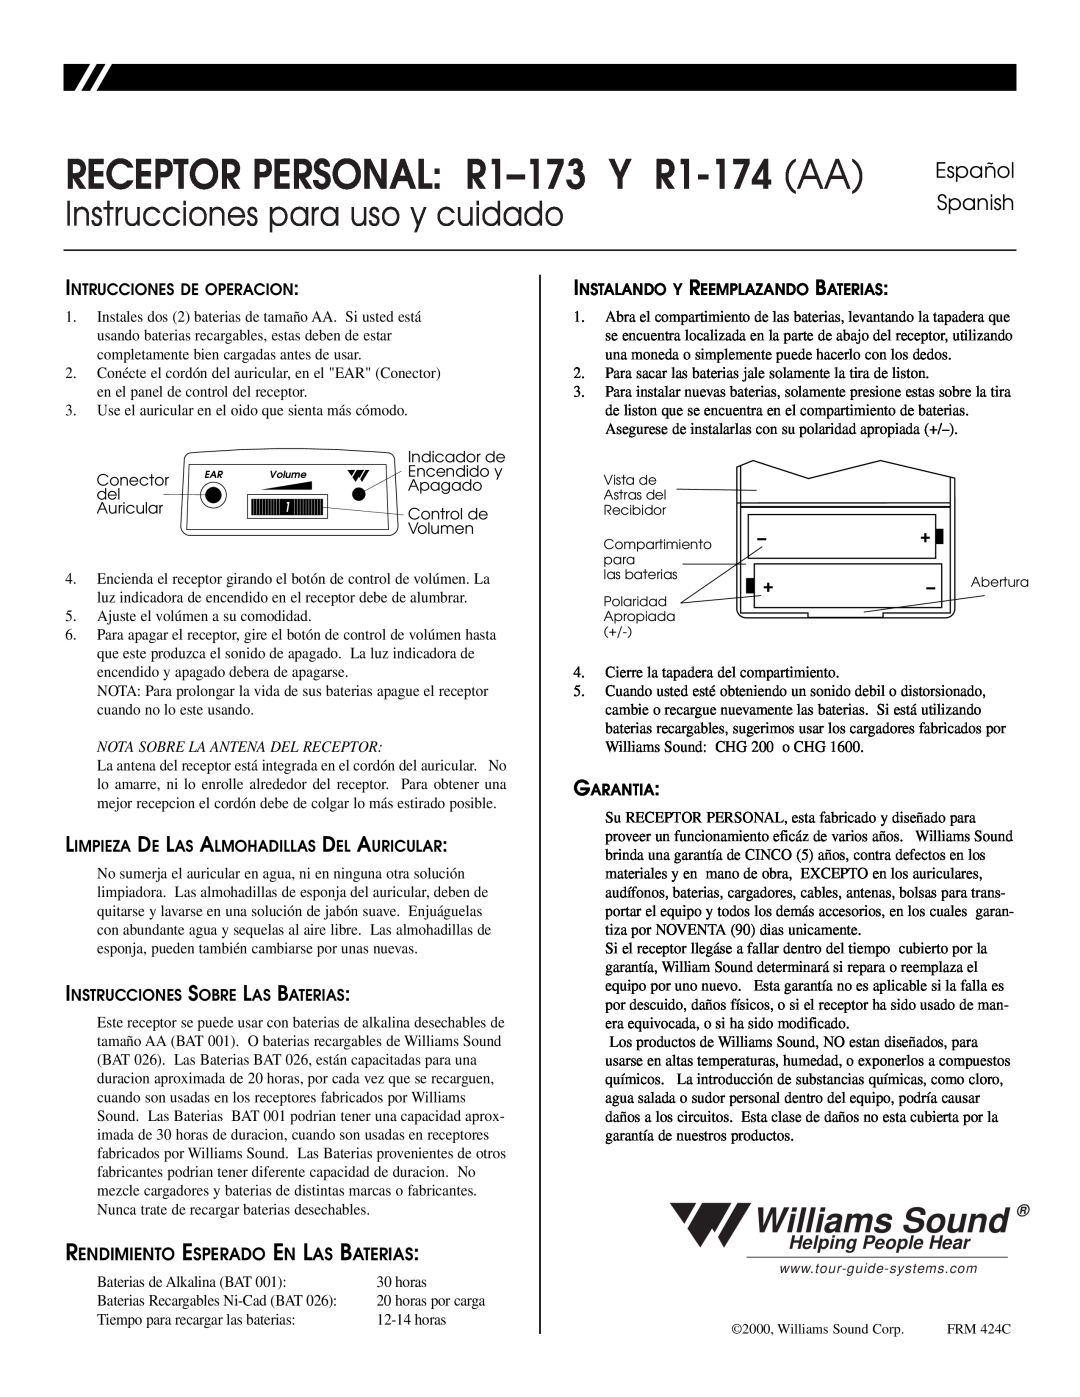 Williams Sound R1-174, R1-173 Instrucciones para uso y cuidado, Español Spanish, Rendimiento Esperado En Las Baterias 